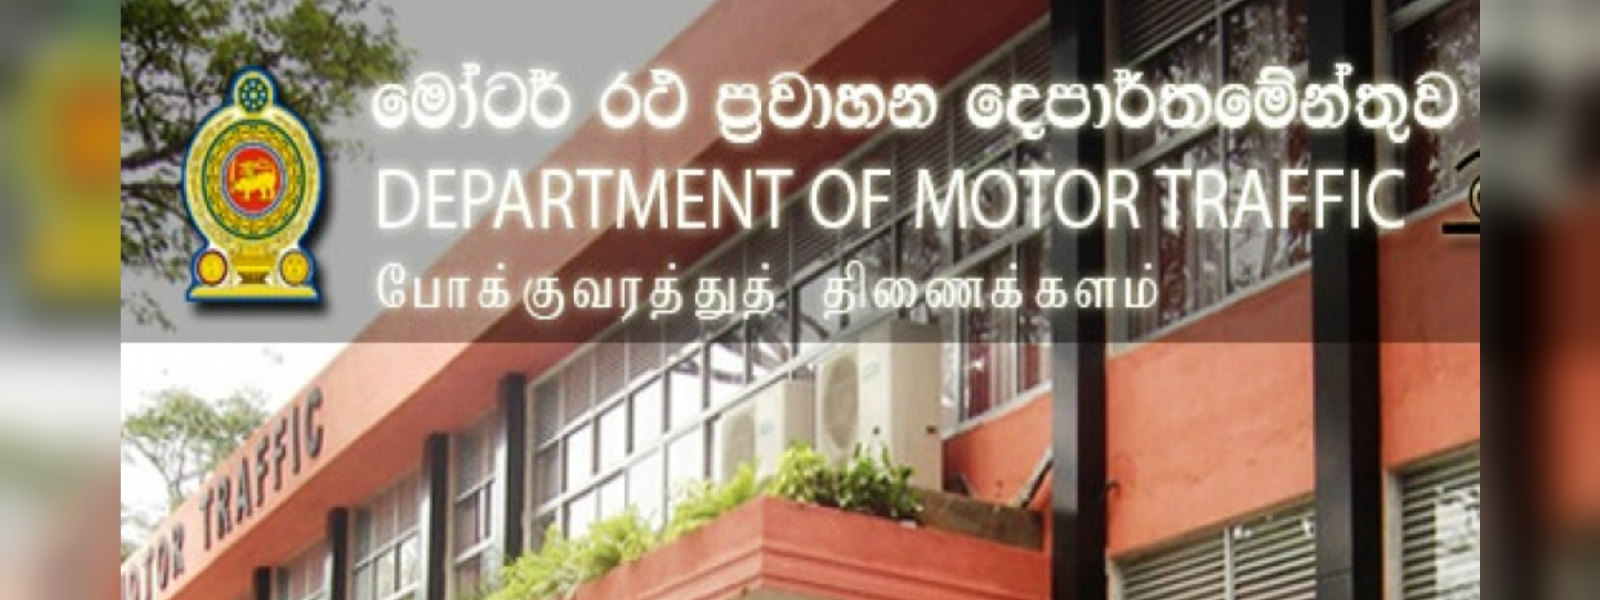 Renewal of vehicle licences at Thimbirigasyaya D.S